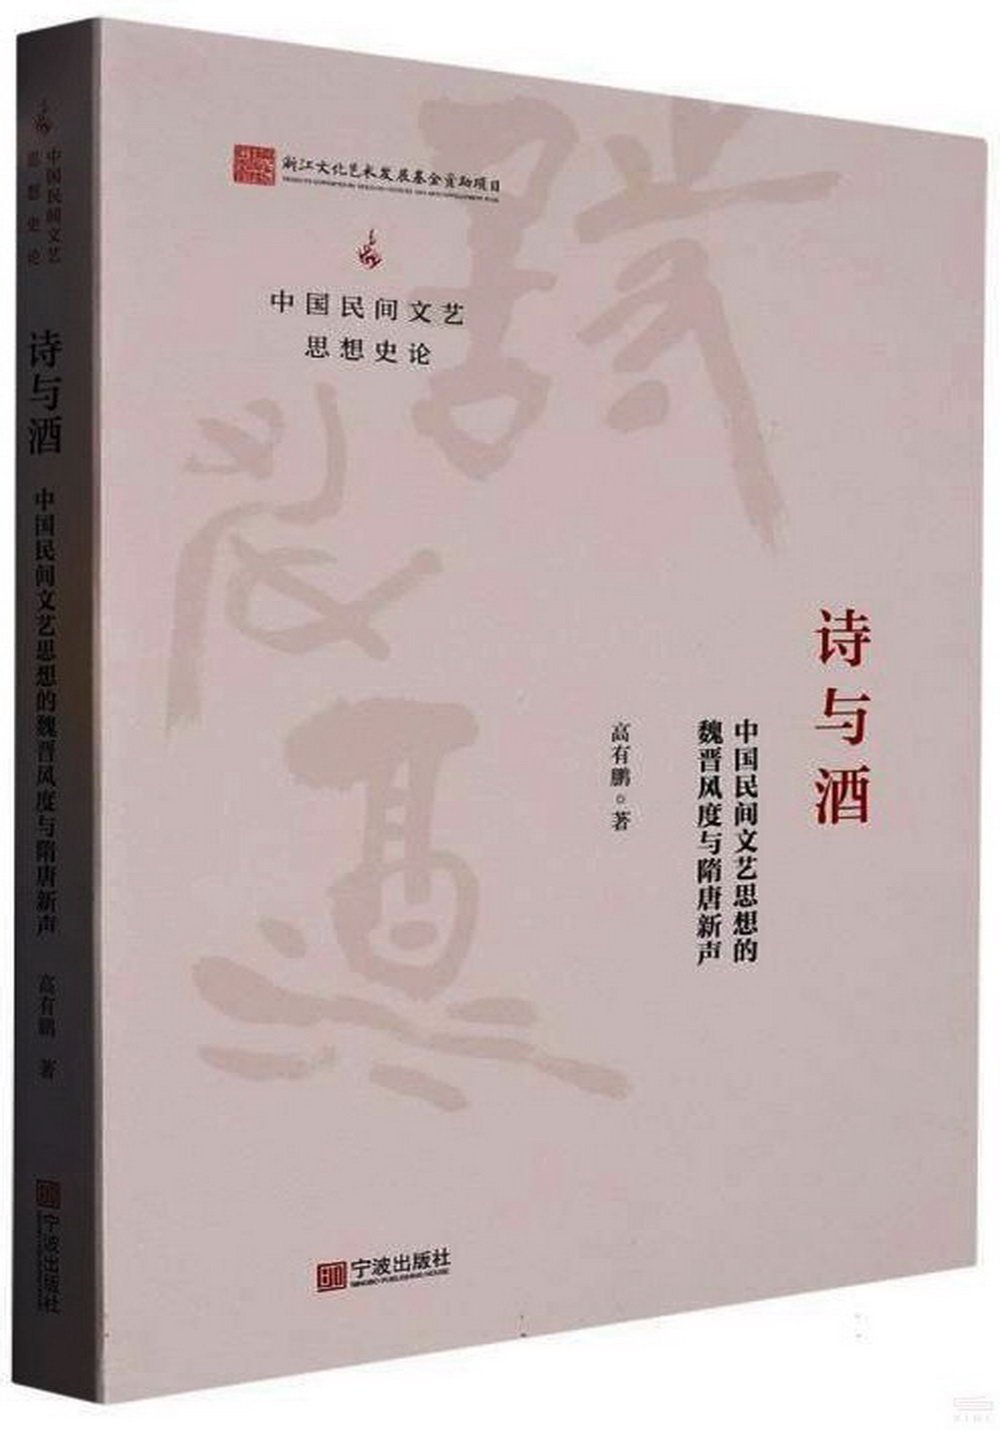 詩與酒：中國民間文藝思想的魏晉風度與隋唐新聲